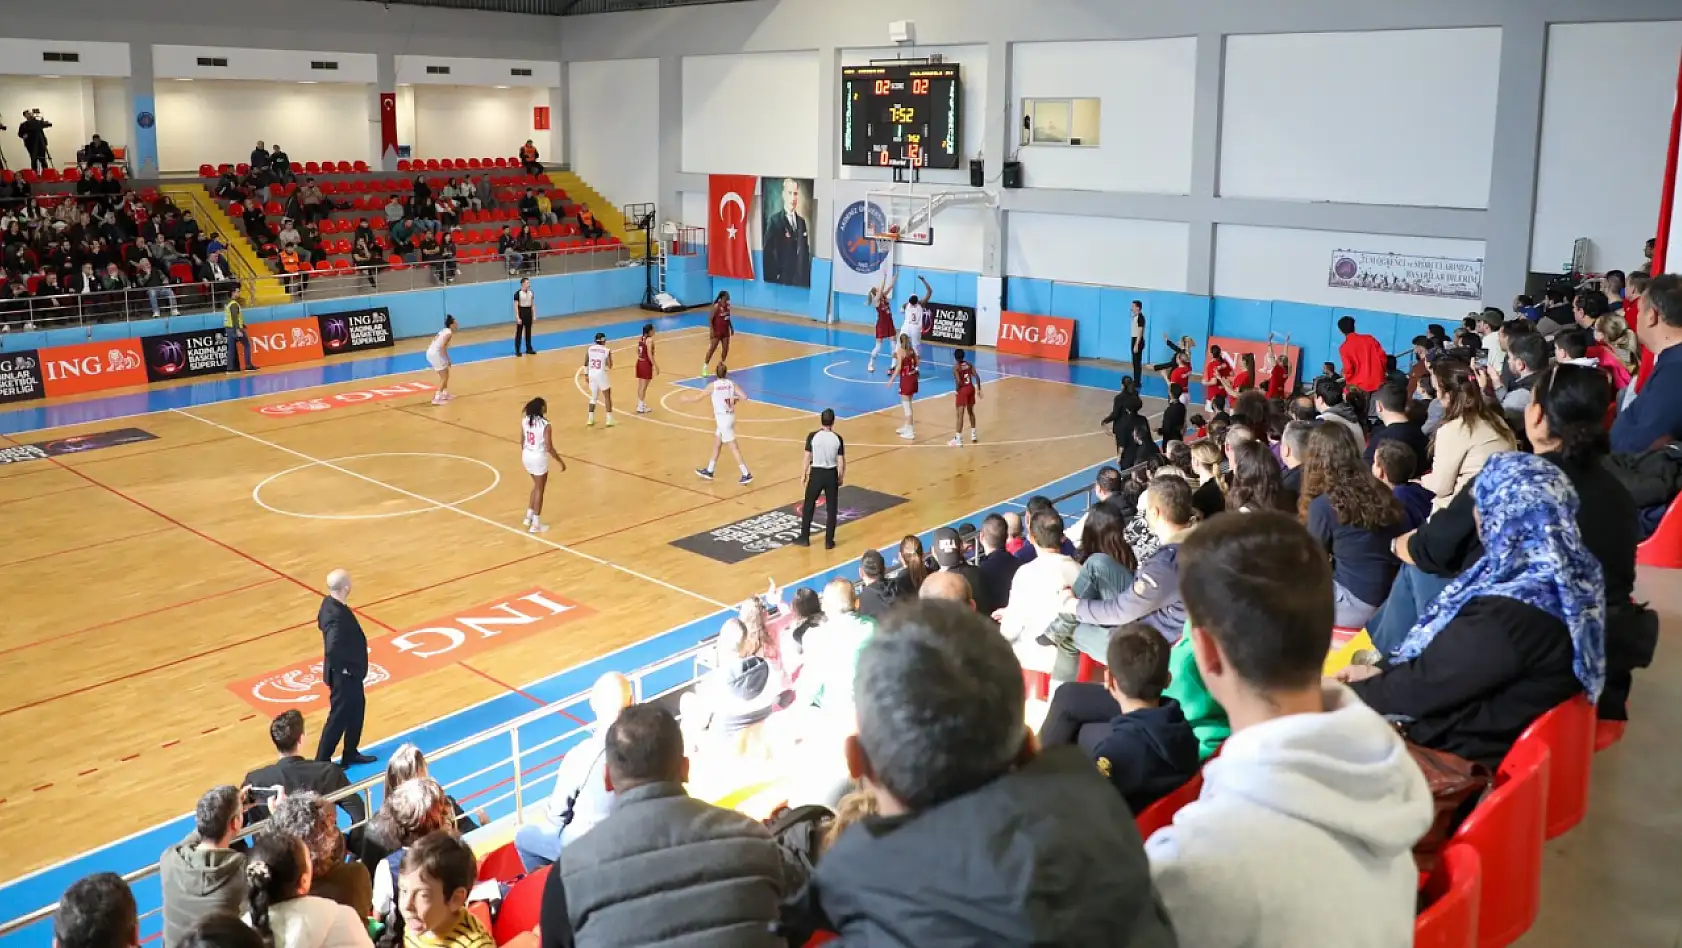 Melikgazi Kayseri Basketbol 1 sayı farkla mağlup oldu